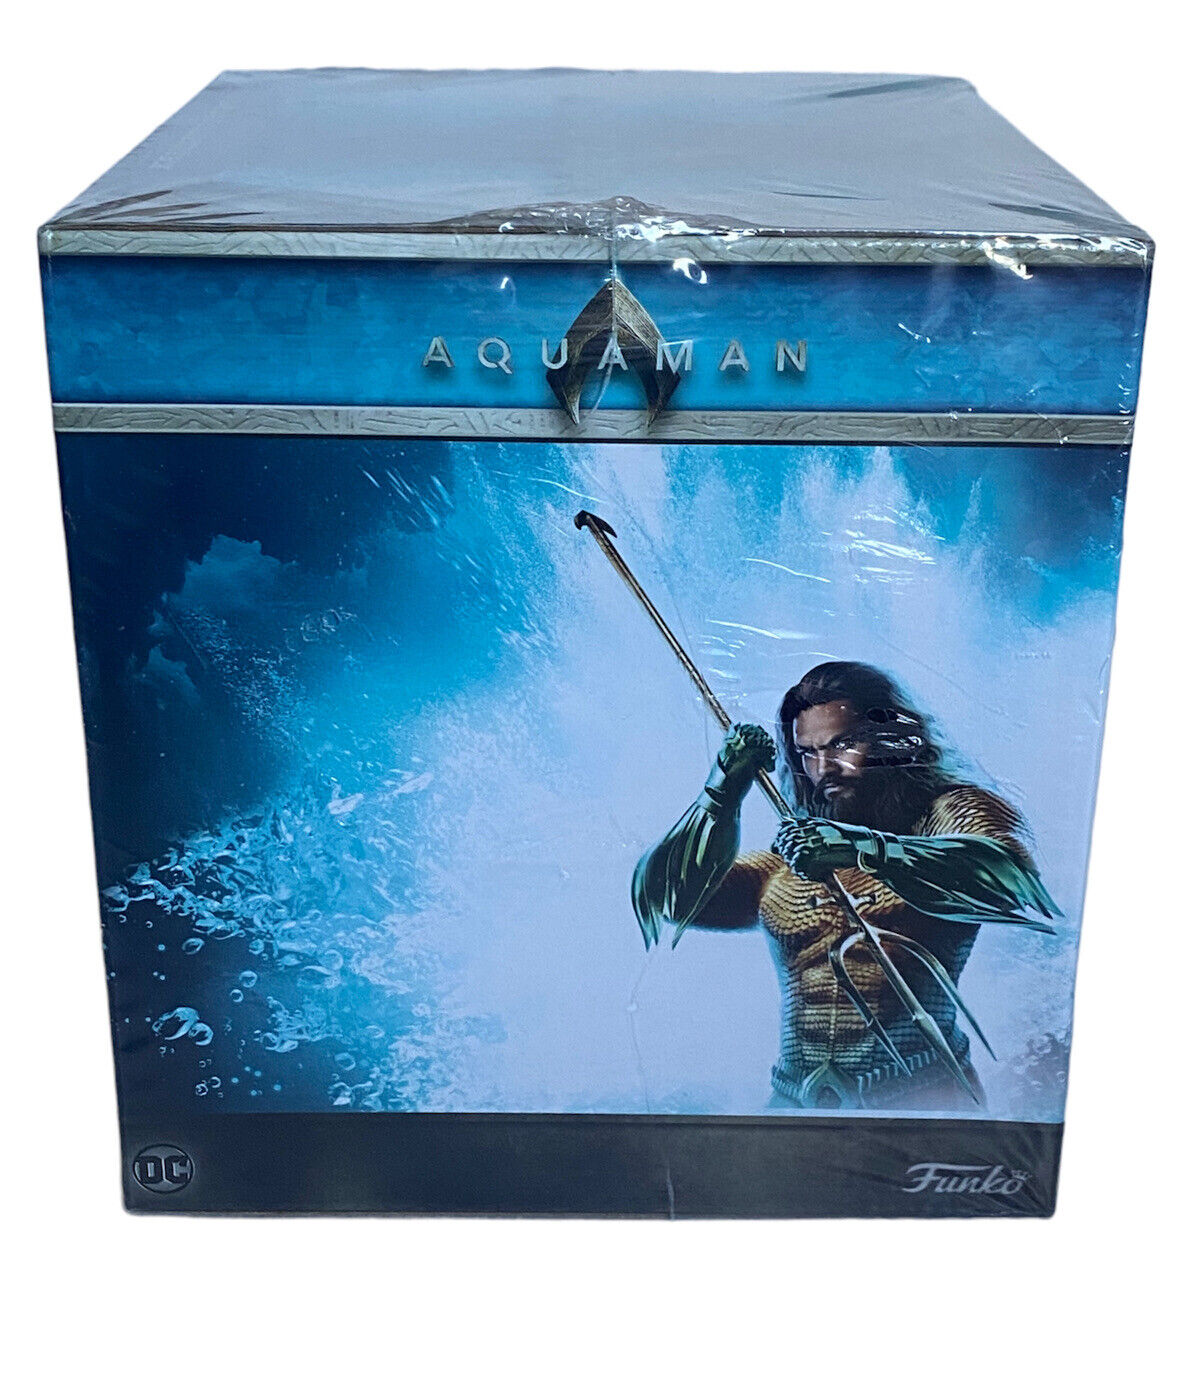 DC Aquaman Funko Collectors Box